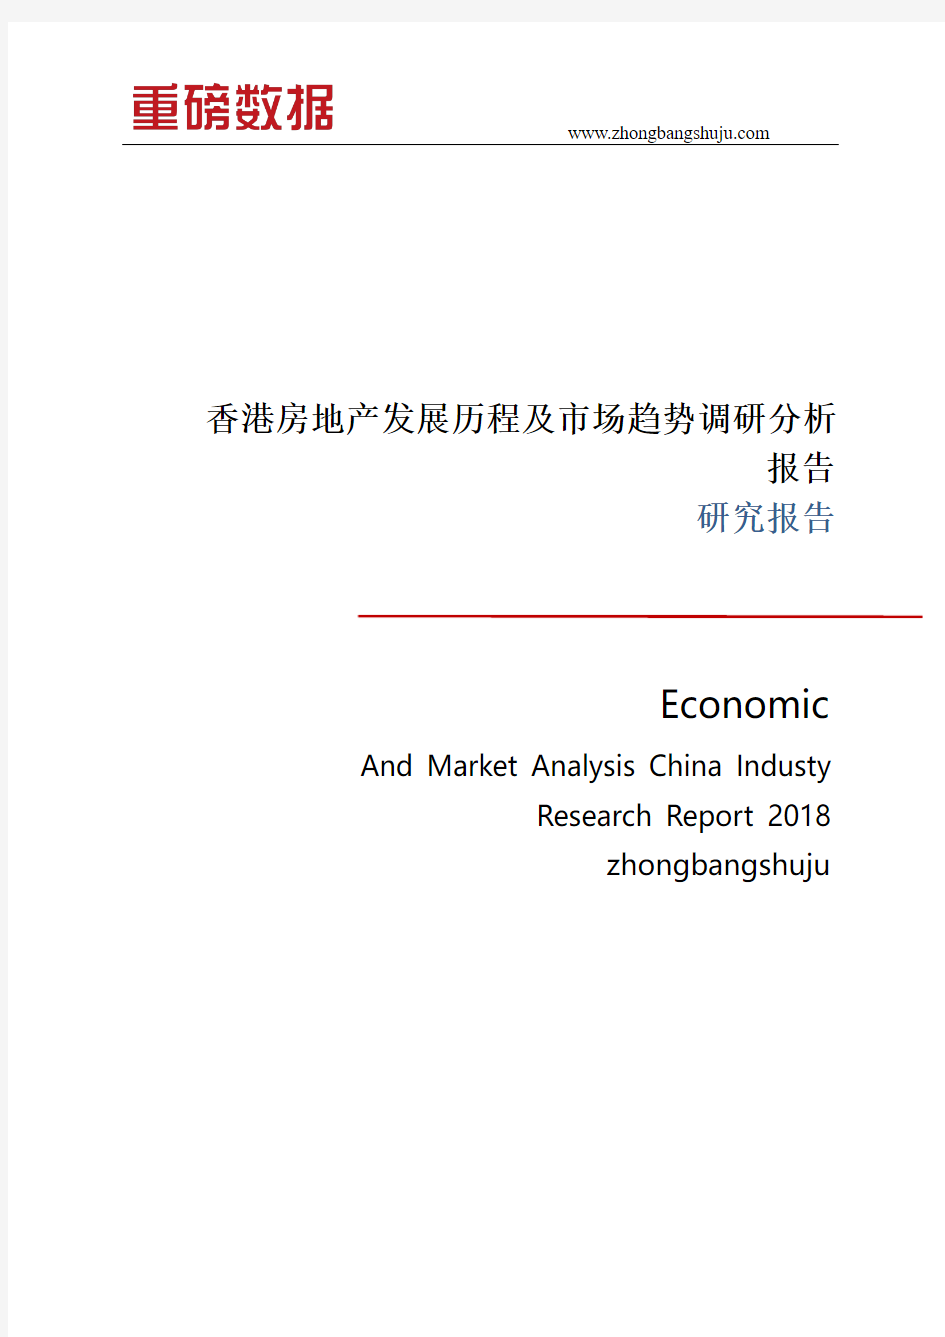 香港房地产发展历程及市场趋势调研分析报告2017-2018